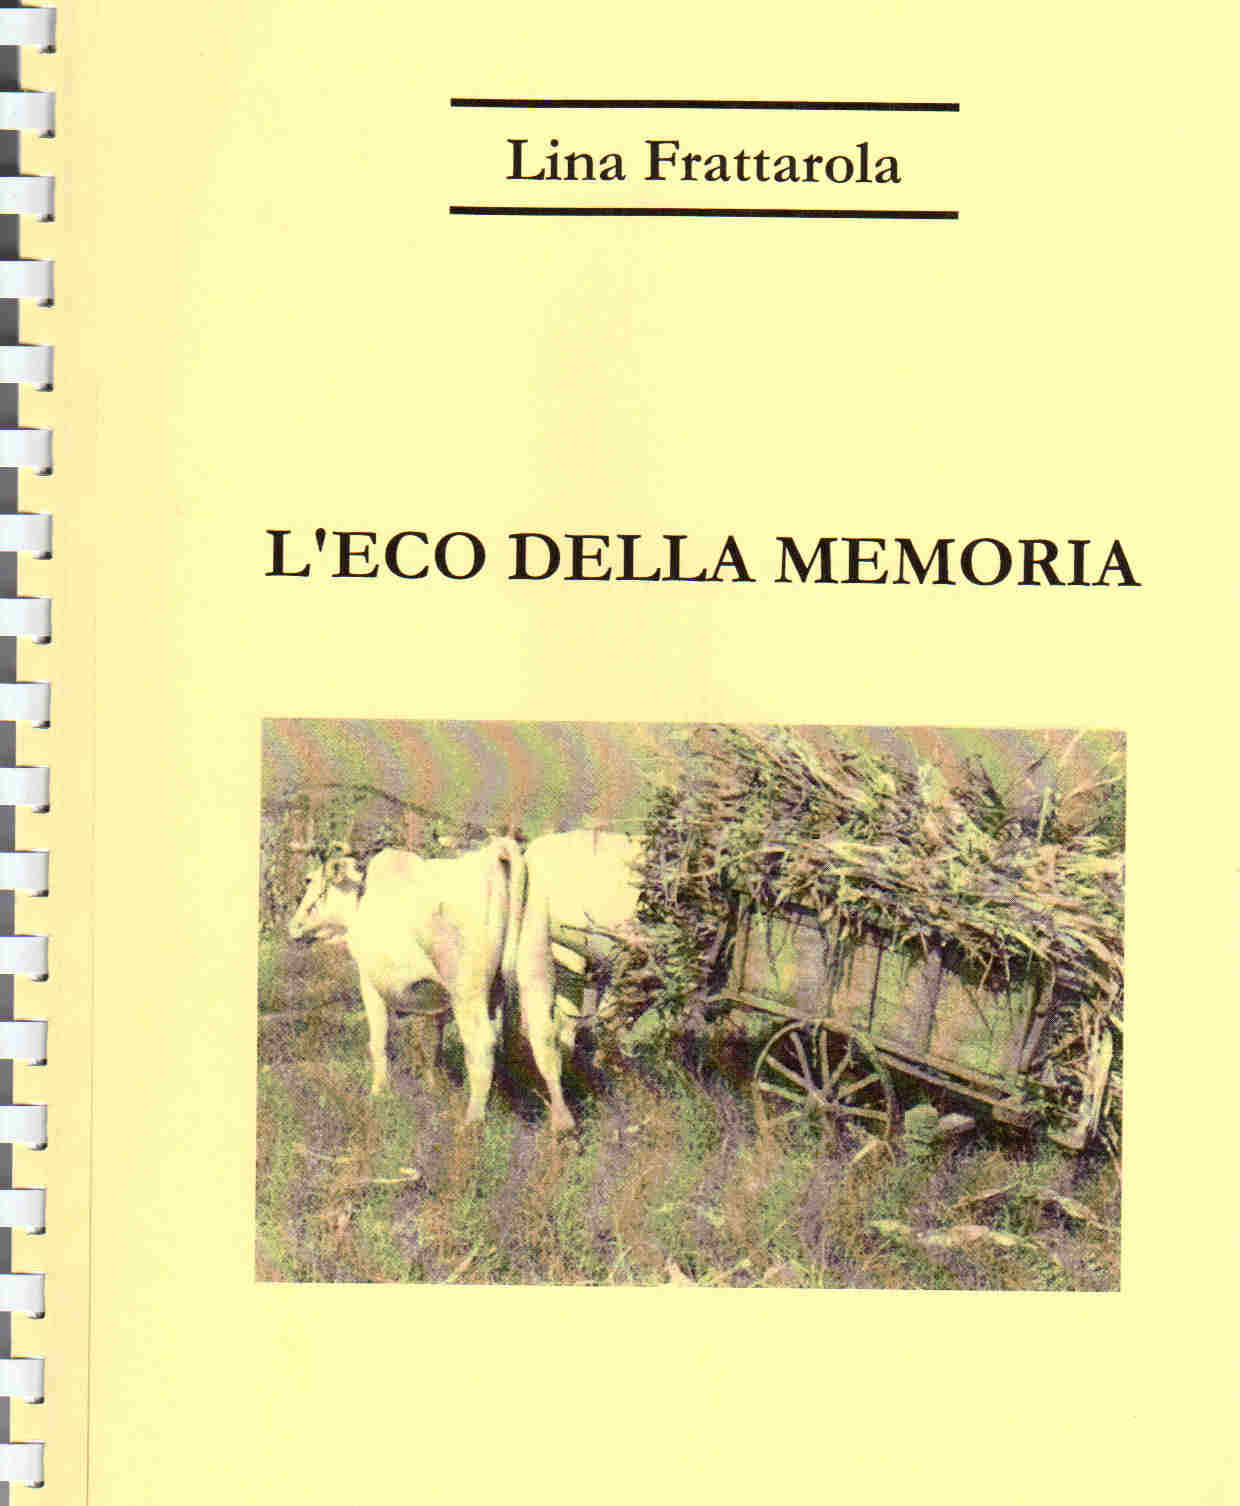 2010 - L'ECO DELLA MEMORIA